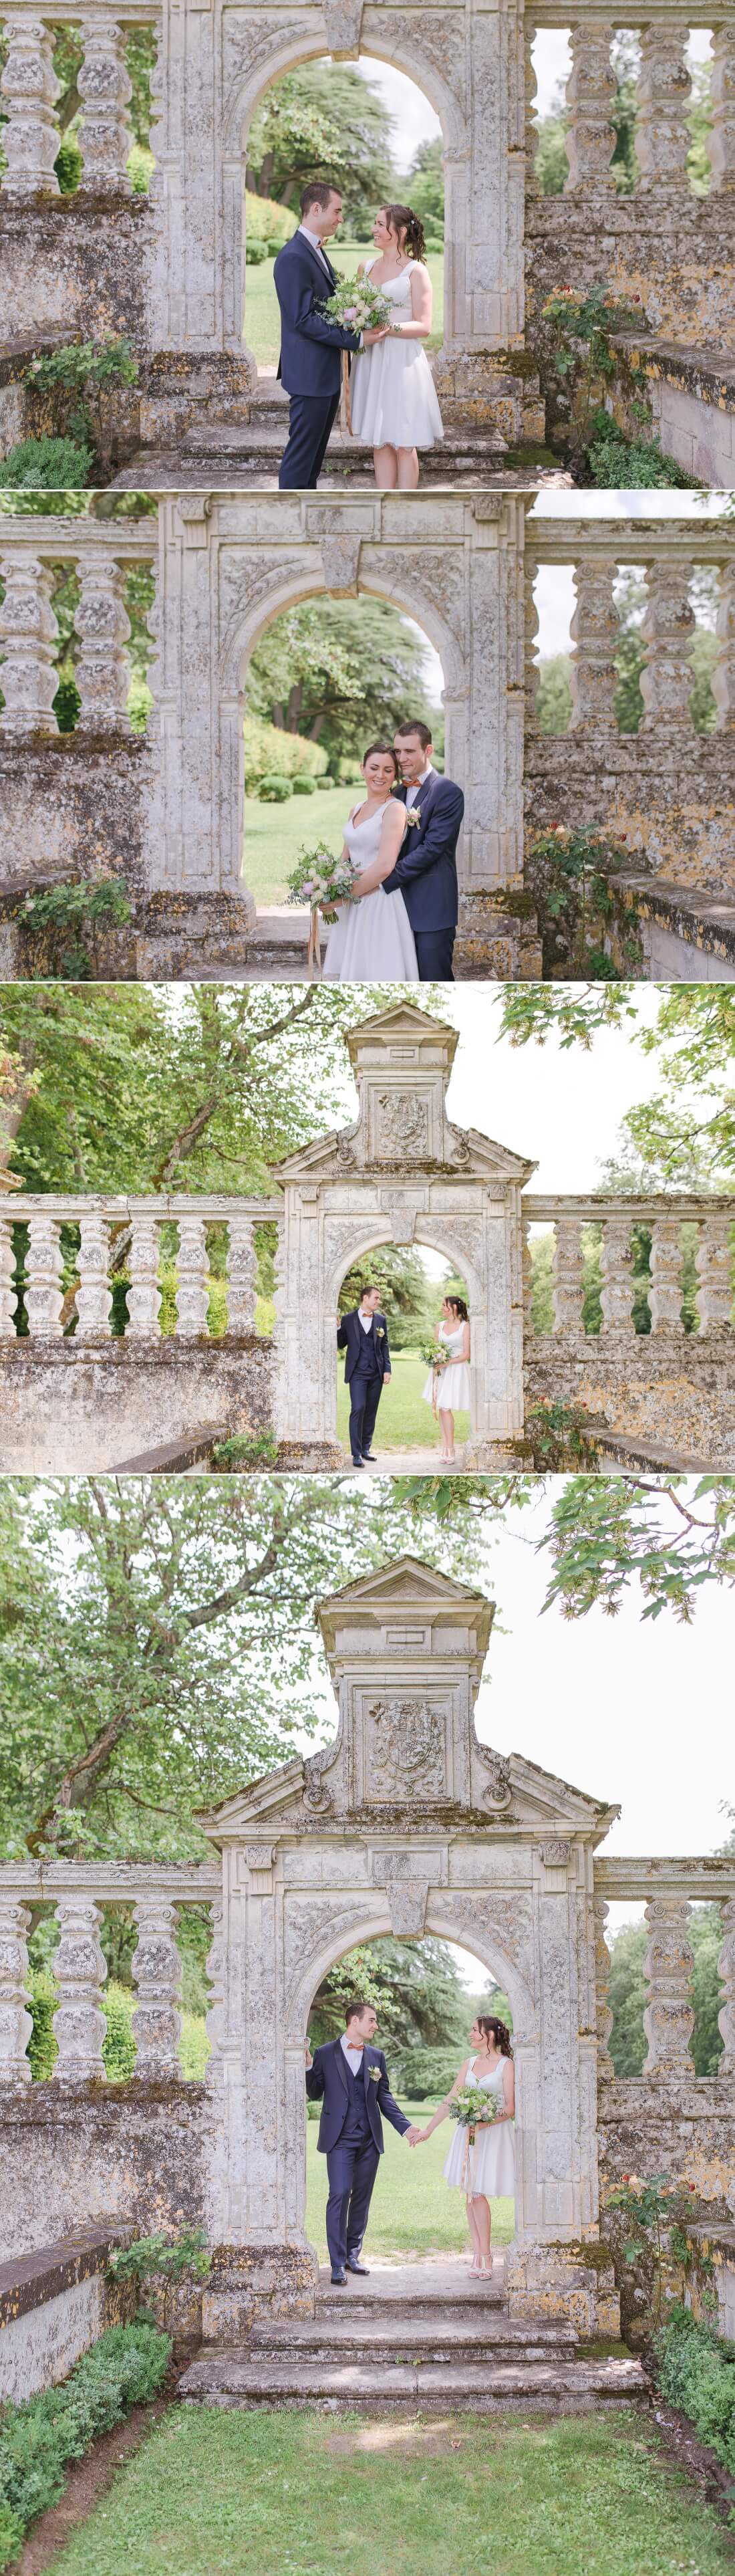 Mariage au Chateau de la Bourdaisiere - Photographe mariage Tours